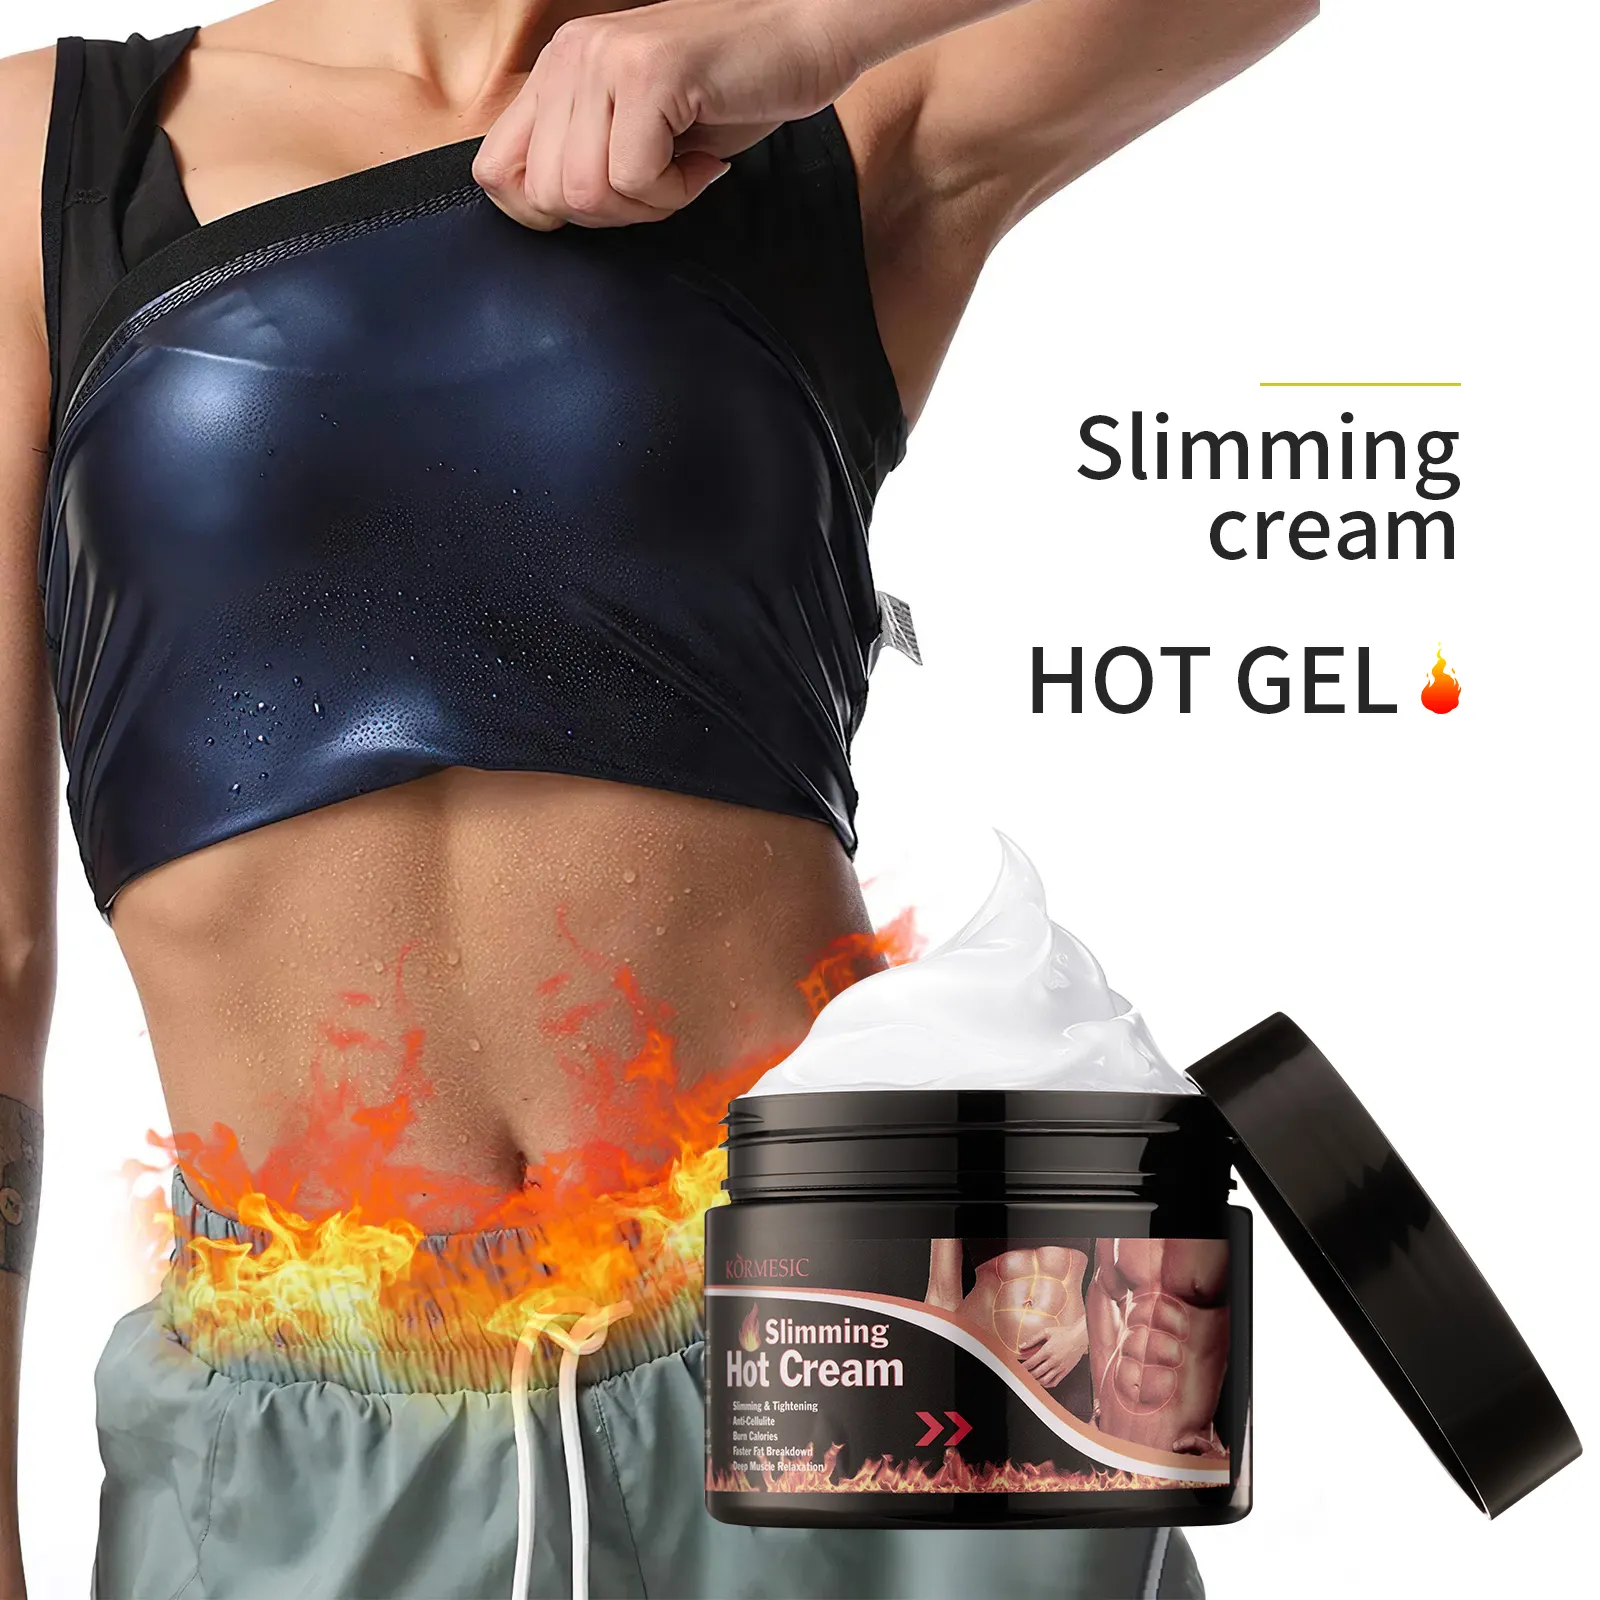 OEM ODM KORMESIC वजन घटाने कोरिया निजी लेबल पेट जांघ गर्म जेल शरीर में वसा जलने स्लिमिंग क्रीम सबसे अच्छा स्लिमिंग क्रीम